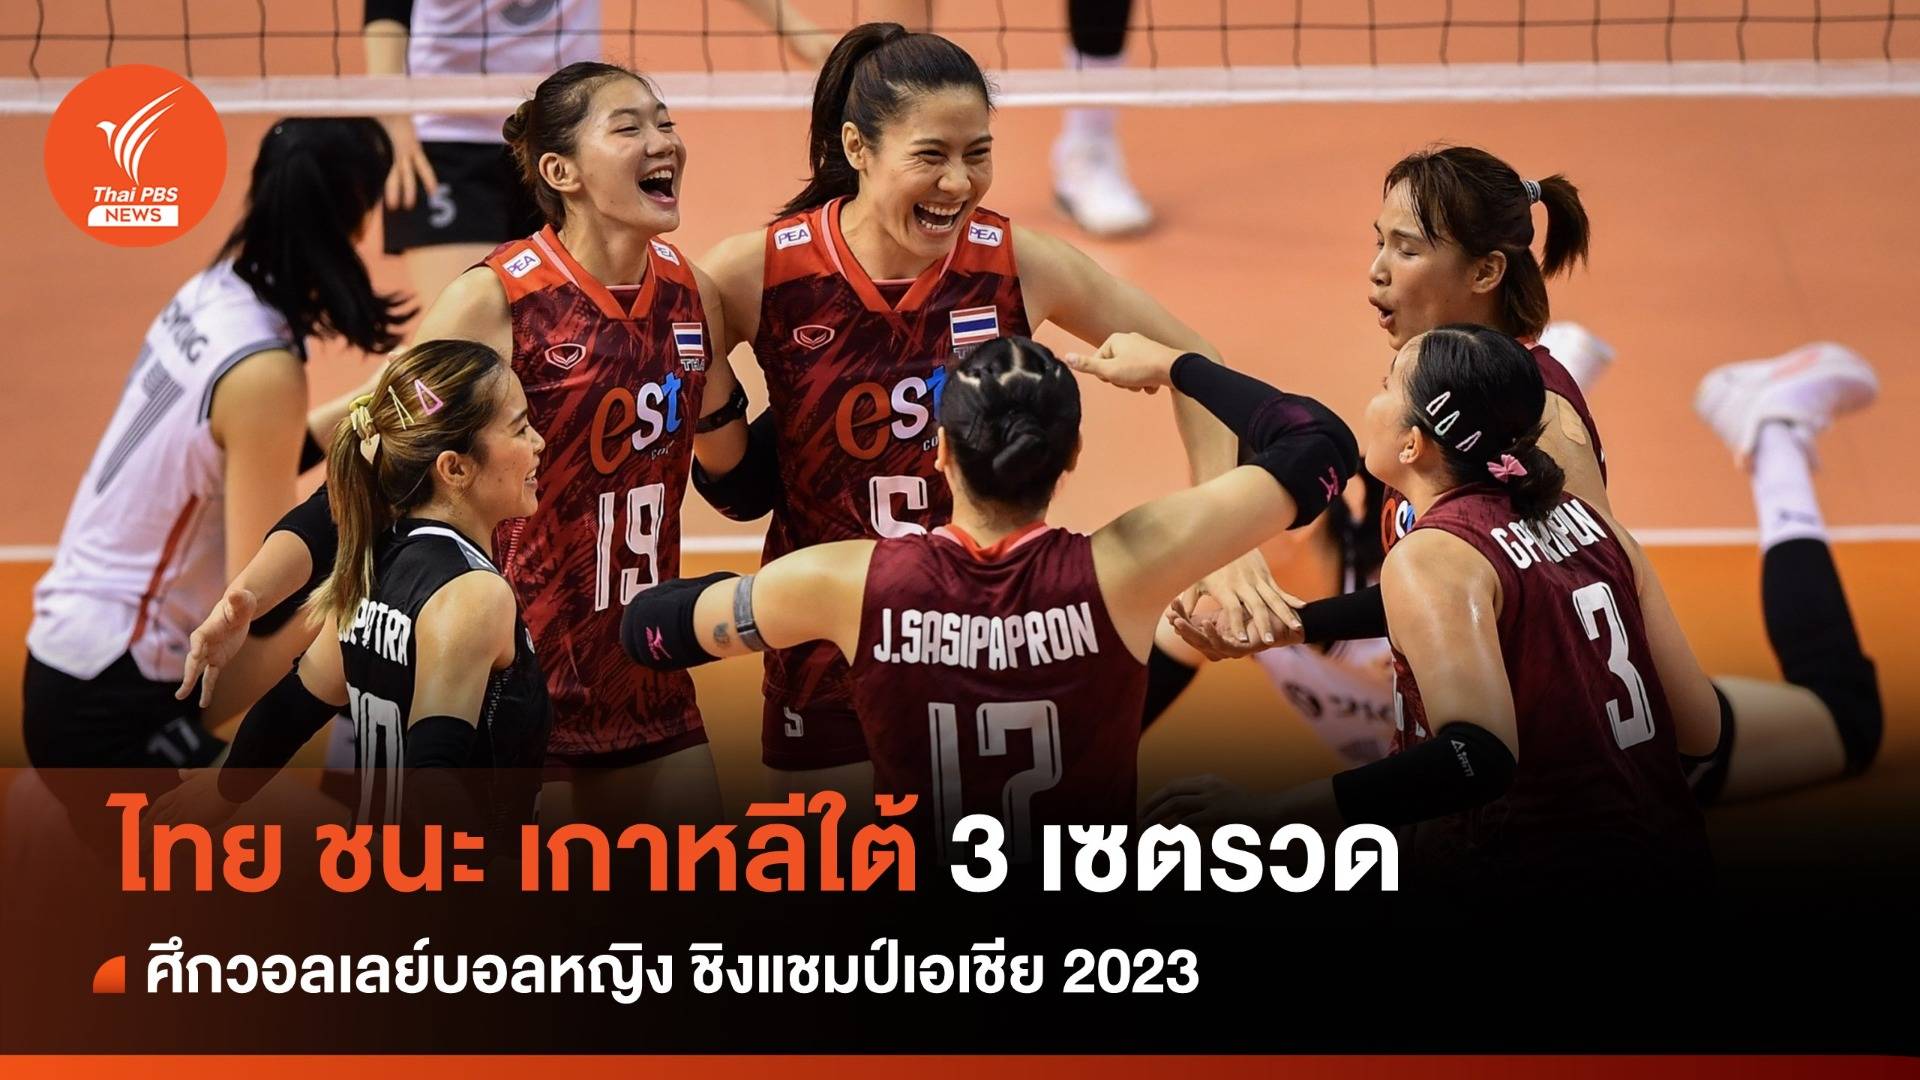 วอลเลย์บอลหญิงไทย ชนะ เกาหลีใต้ 3 เซตรวด ศึกชิงแชมป์เอเชีย 2023 